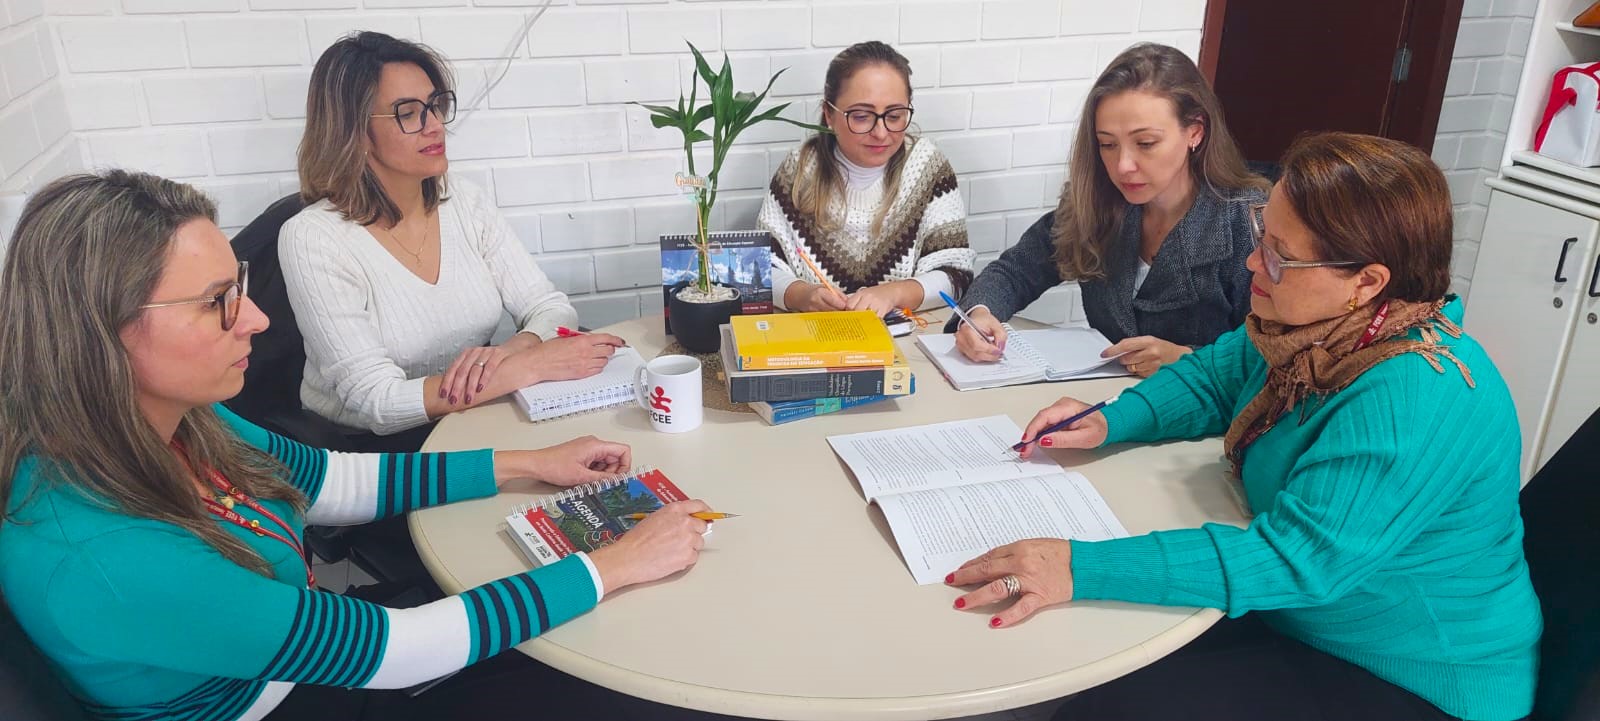 Cinco mulheres brancas sentadas  em torno de uma mesa redonda, em uma sala, trabalham usando livros de pesquisa